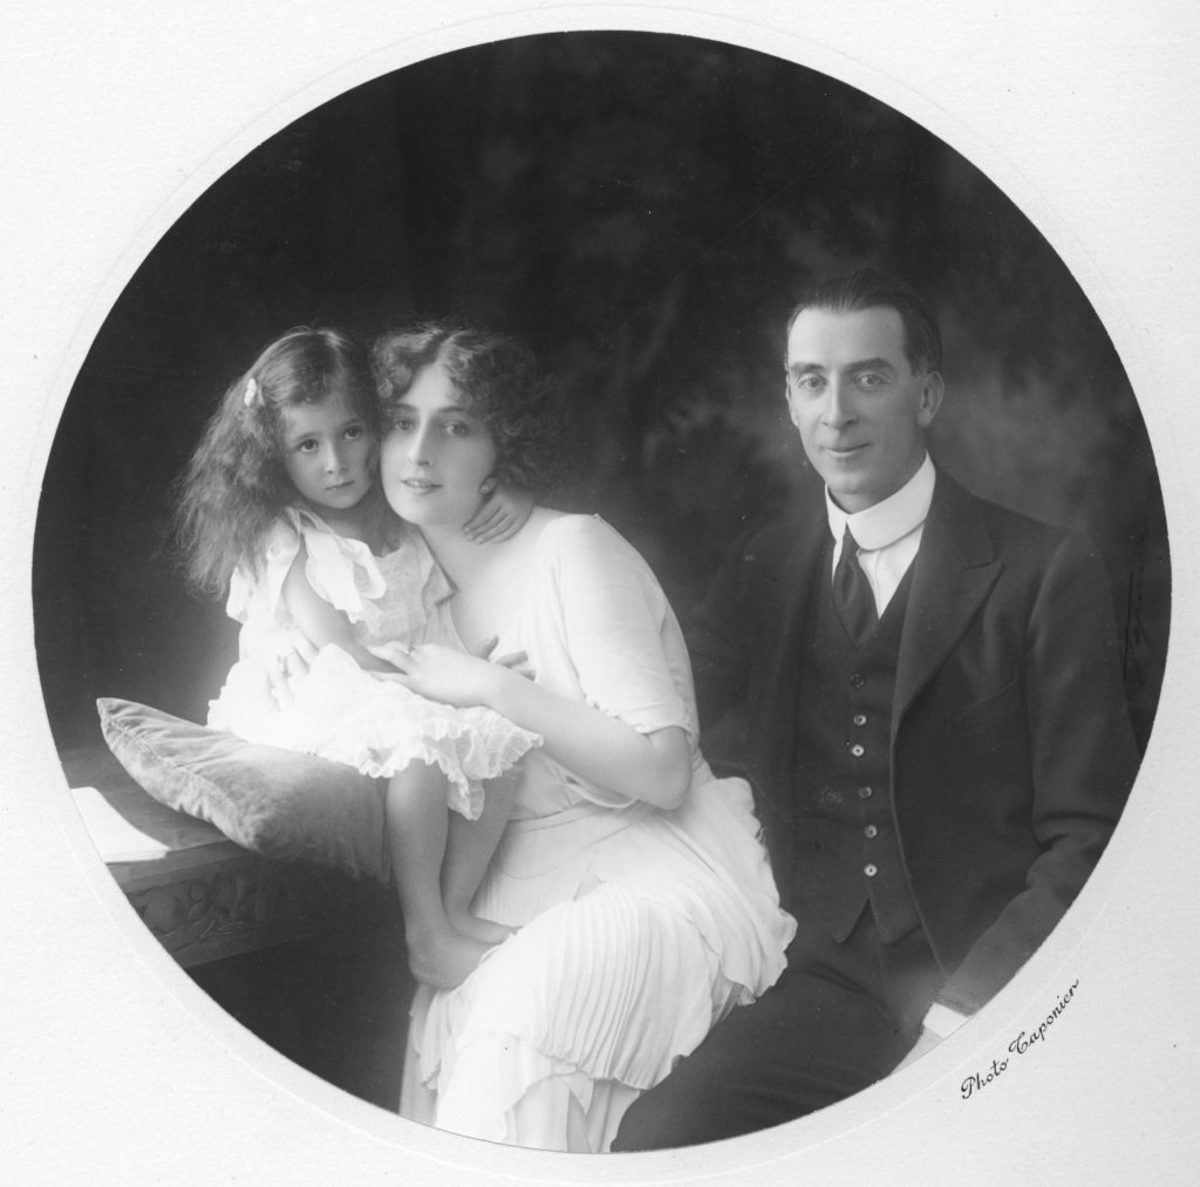 Left to right, Sveva, Ofelia, and Leone.